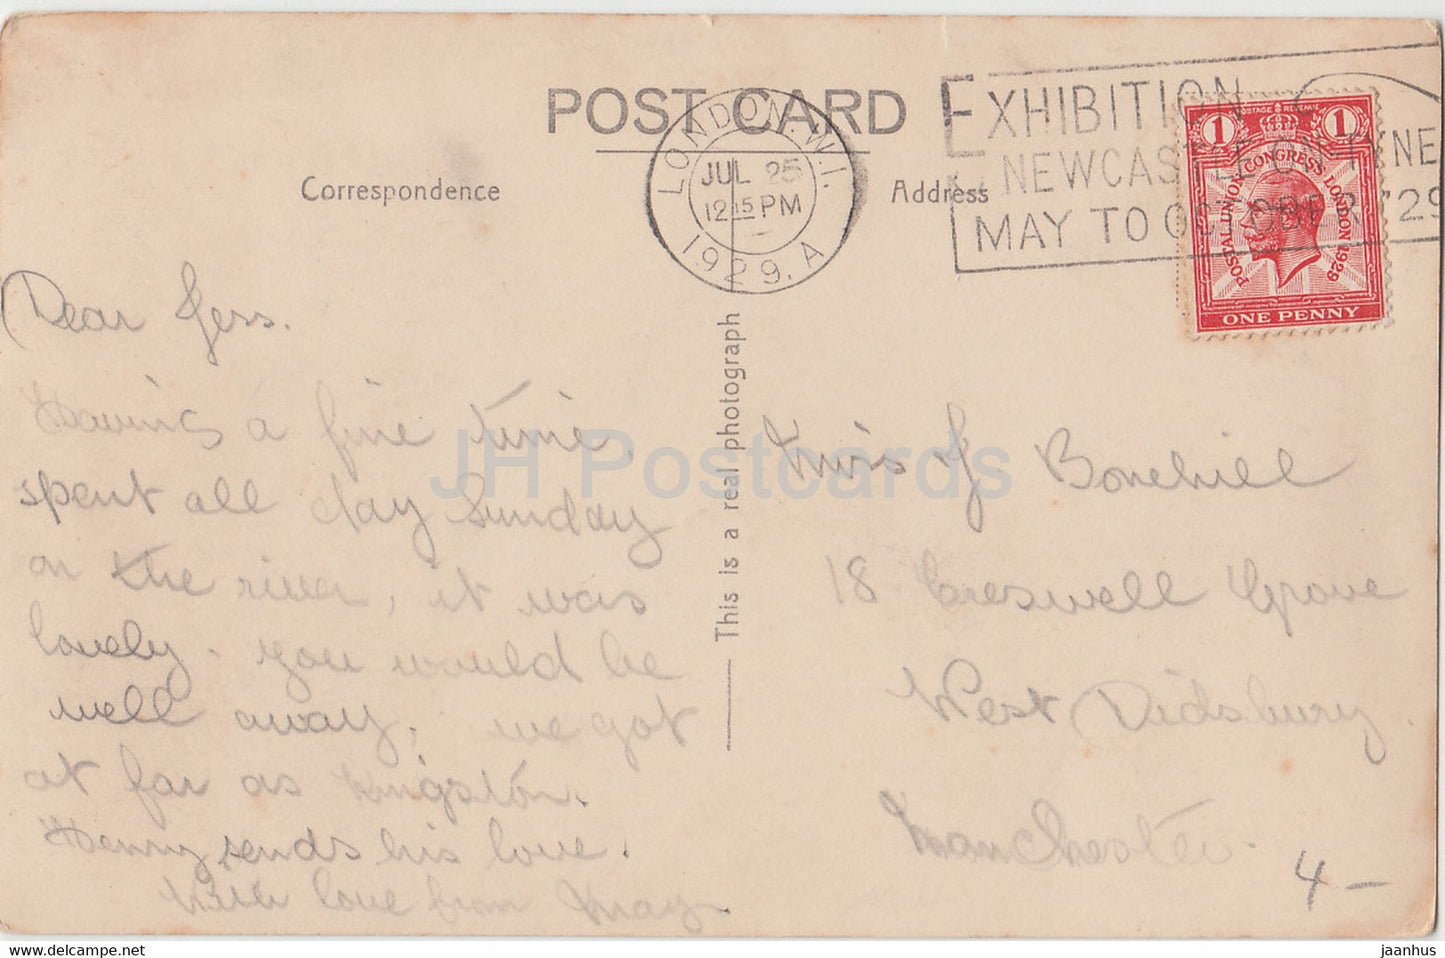 London – The Embankment &amp; Hotels Cecil &amp; Savoy – Straßenbahn – 24297 – alte Postkarte – 1929 – England – Vereinigtes Königreich – gebraucht